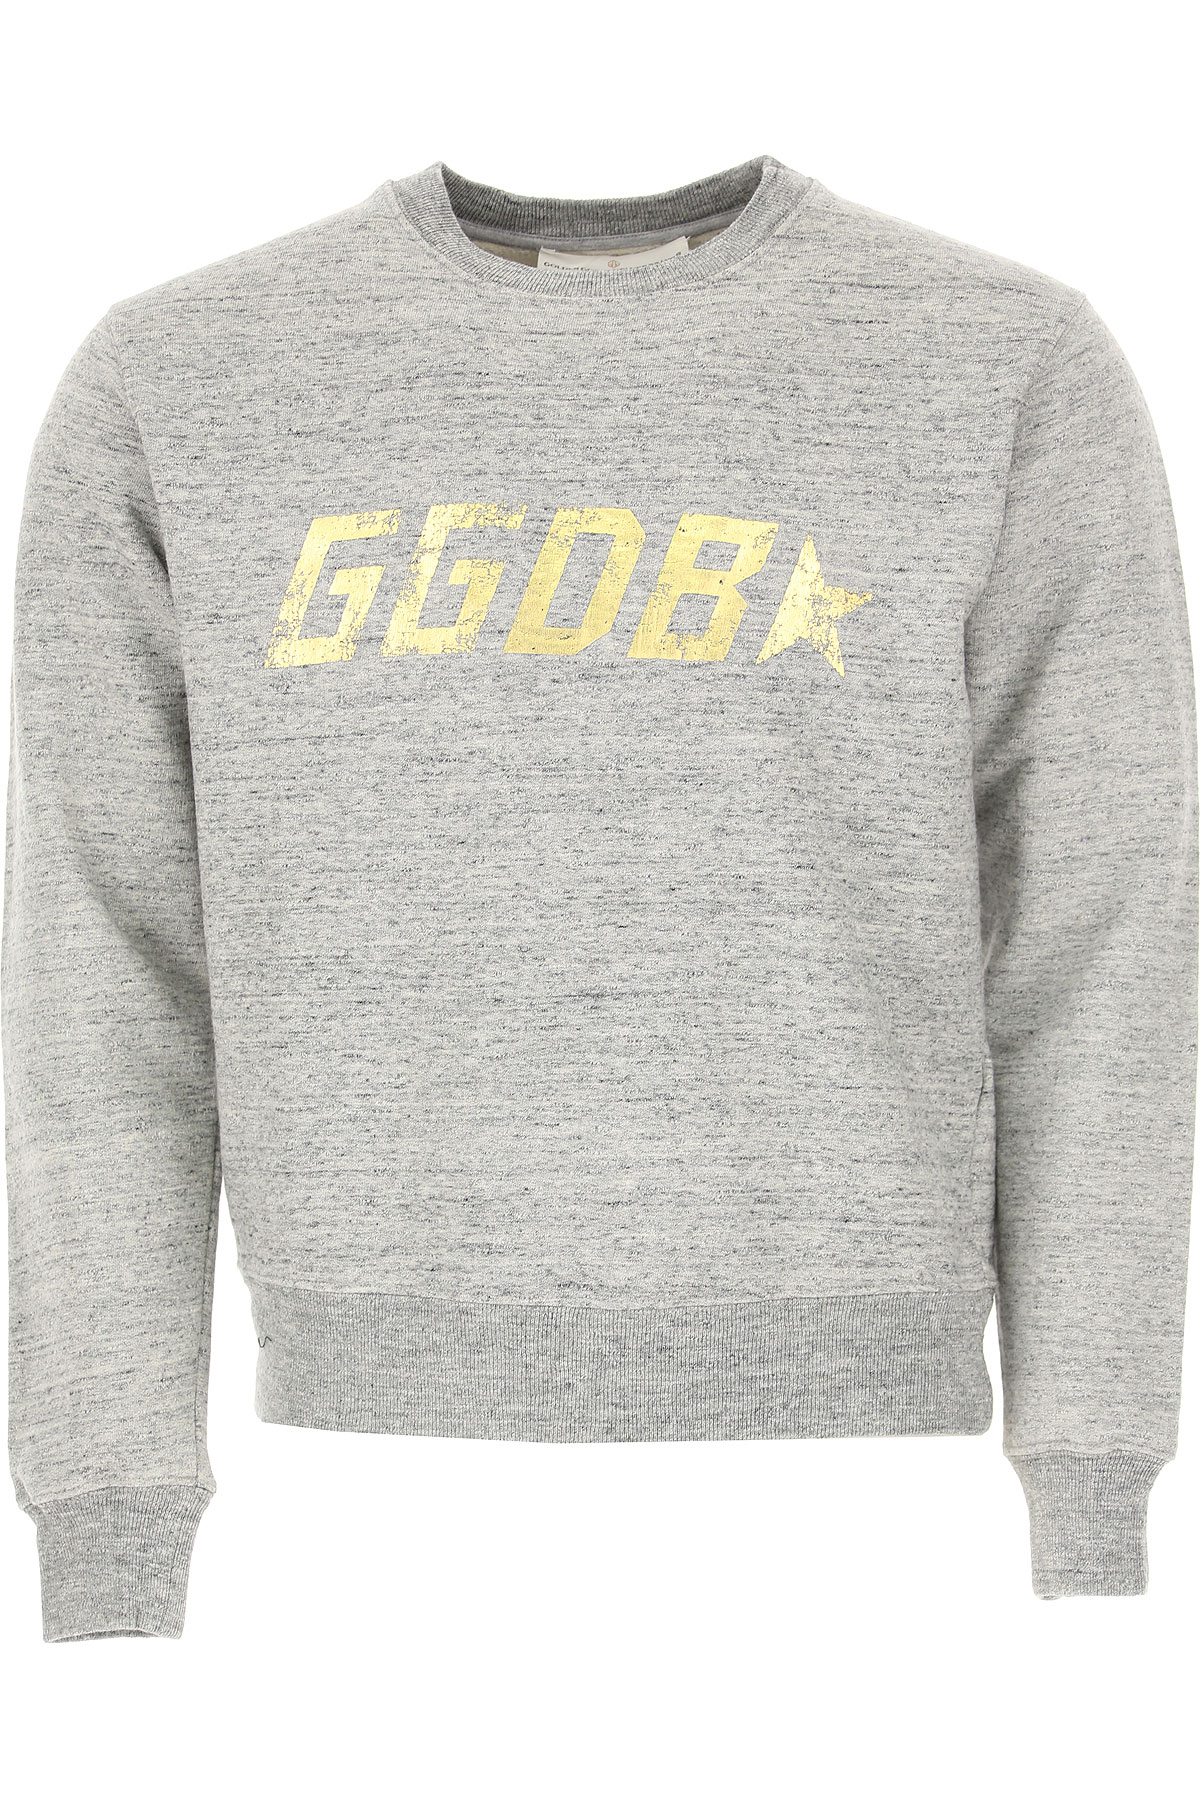 Golden Goose Sweatshirt für Herren, Kapuzenpulli, Hoodie, Sweats Günstig im Sale, Melange Grau, Baumwolle, 2017, S XS